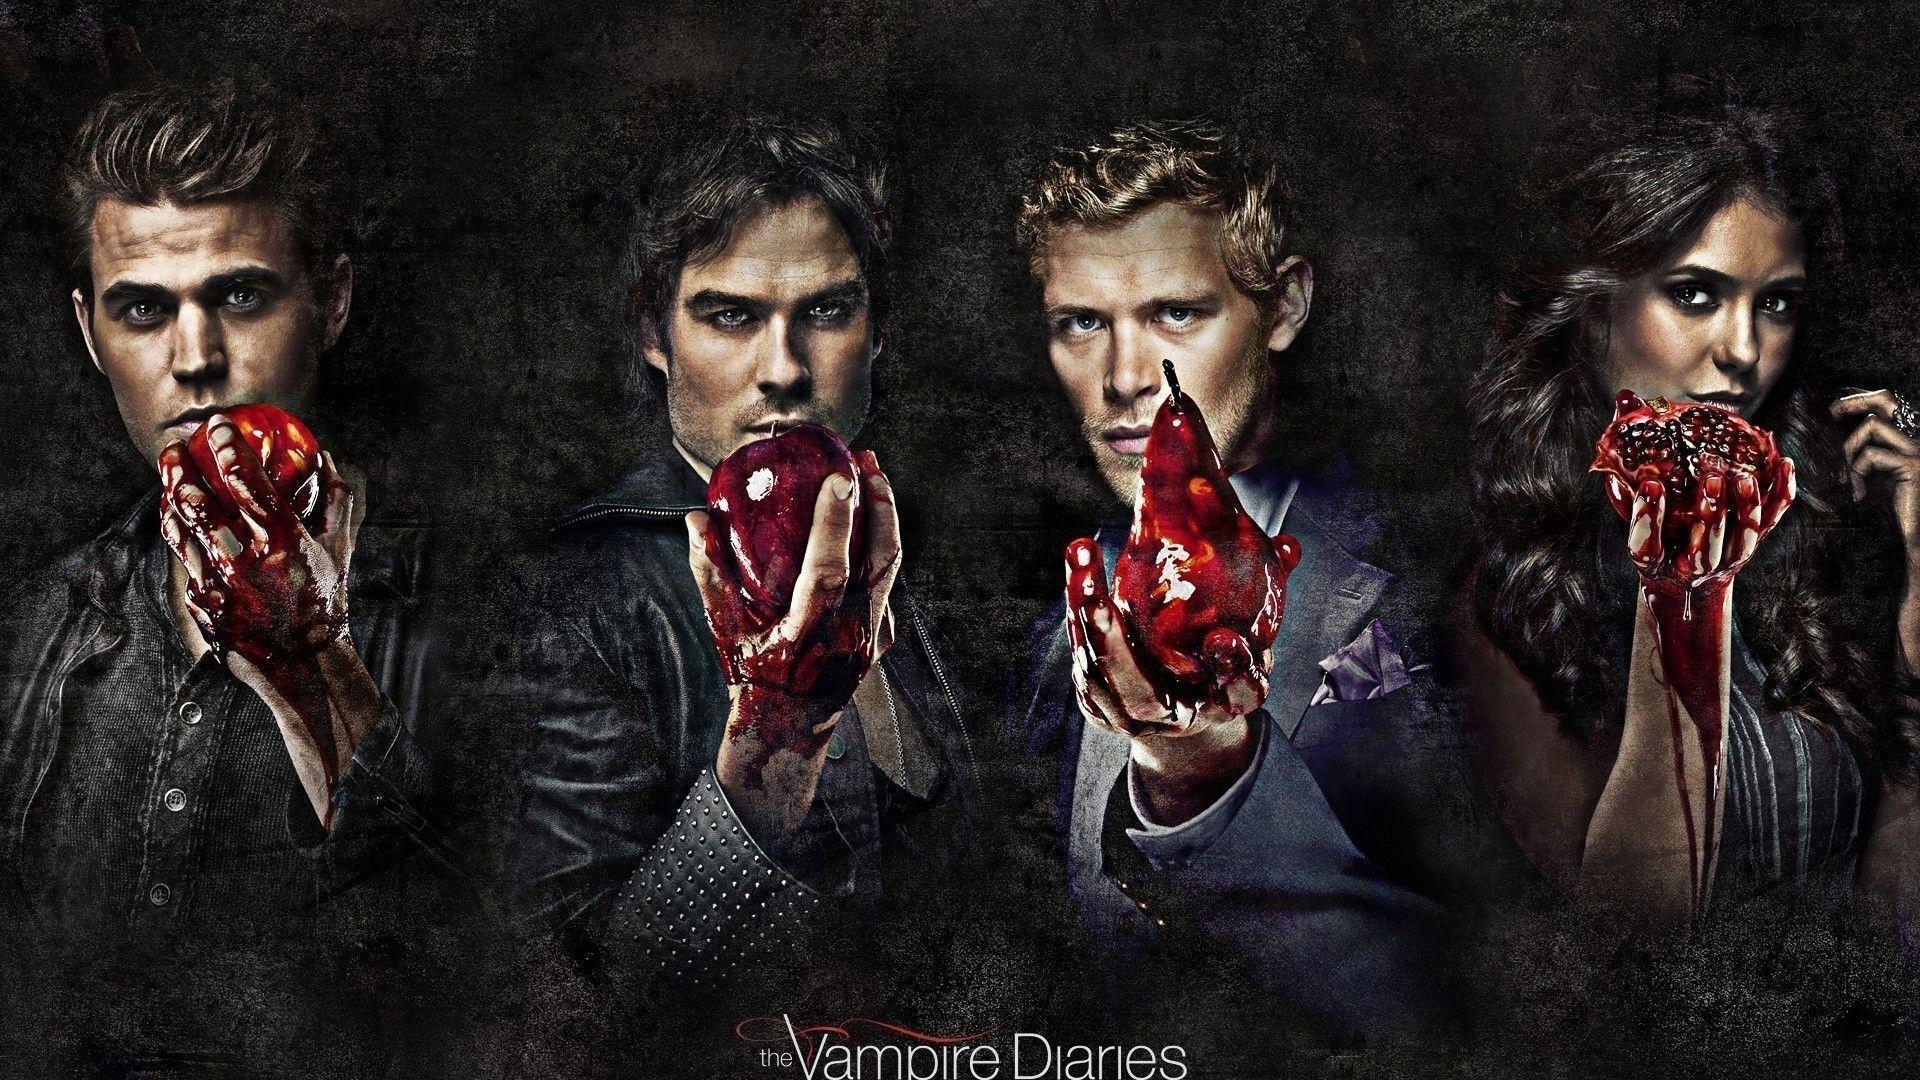 Vampire Diaries Wallpaper. Vampire Diaries Wallpaper, Candice Accola Vampire Diaries Wallpaper and Nina Dobrev Vampire Diaries Wallpaper